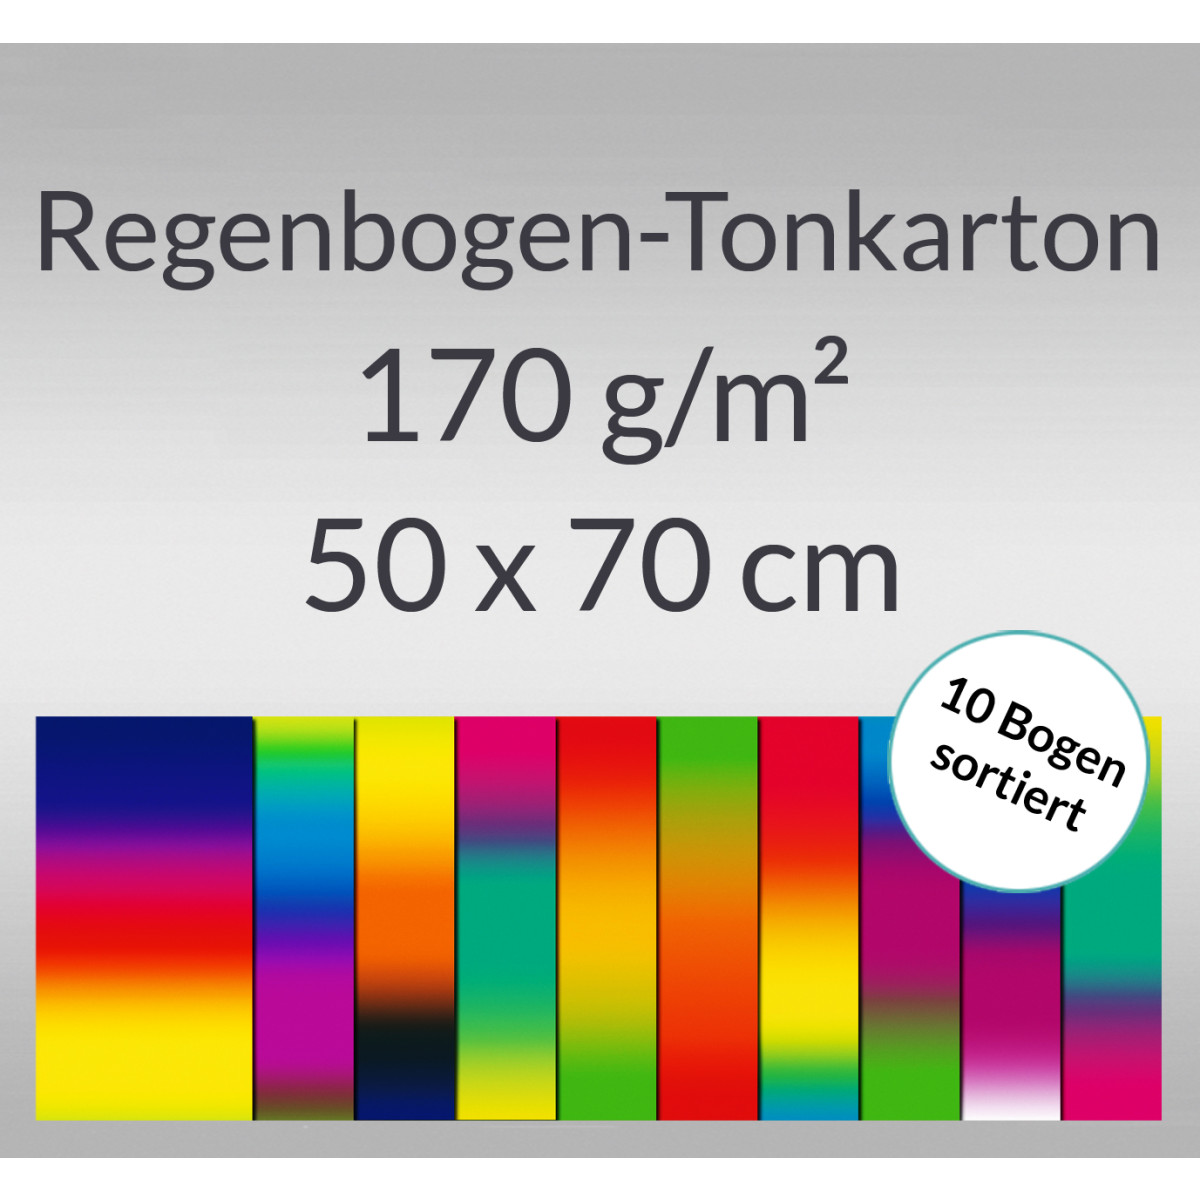 Regenbogen-Tonkarton 170 g/qm 50 x 70 cm - 10 Bogen sortiert